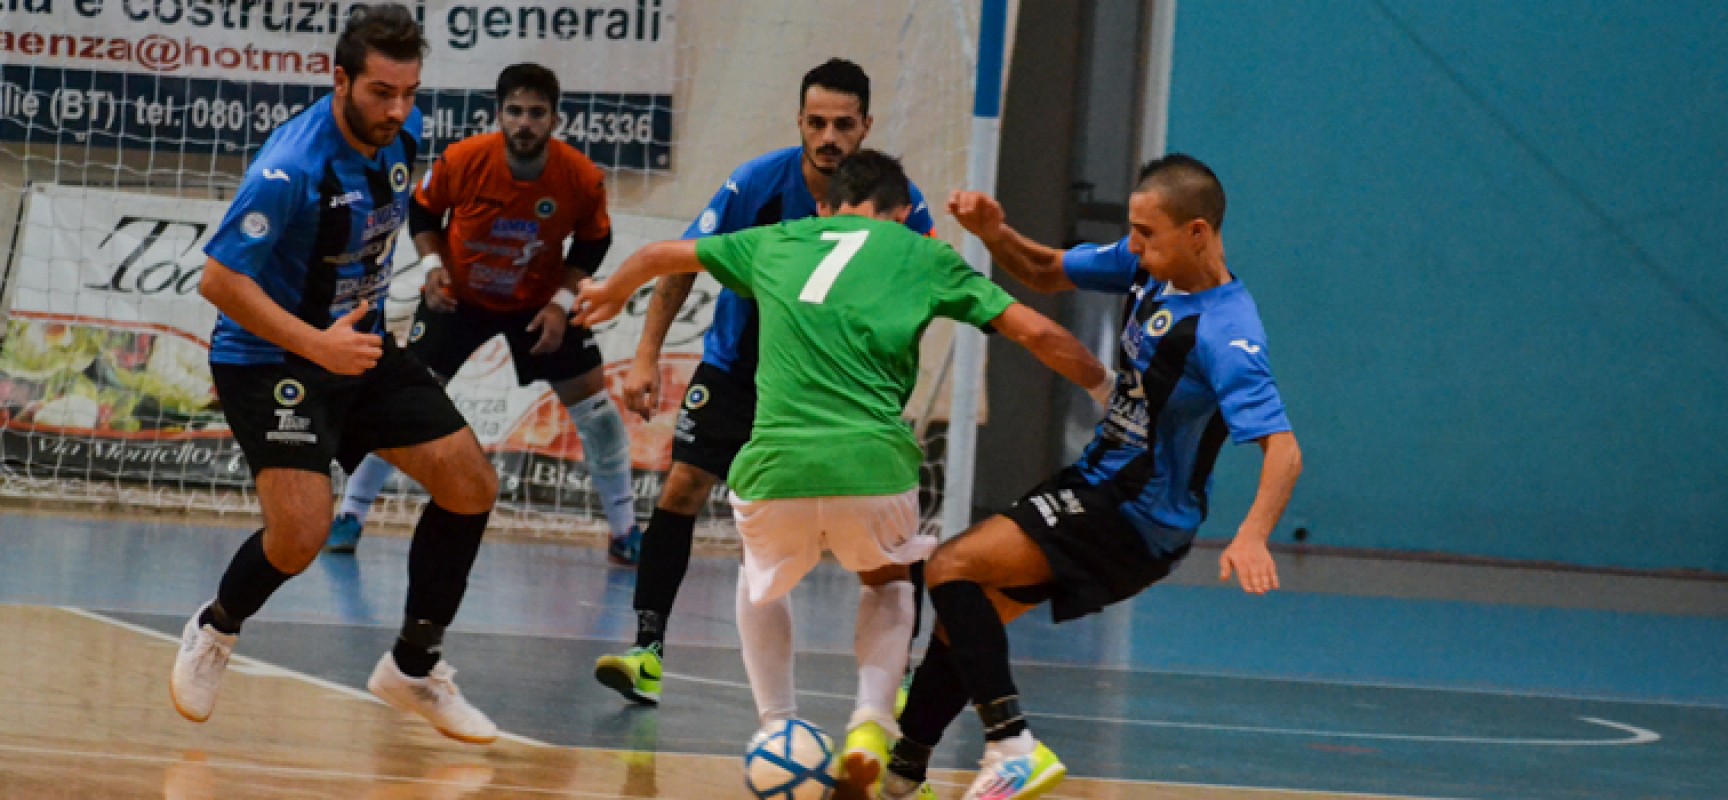 Futsal Bisceglie, oggi contro il Cisternino in palio l’accesso alla final eight di coppa